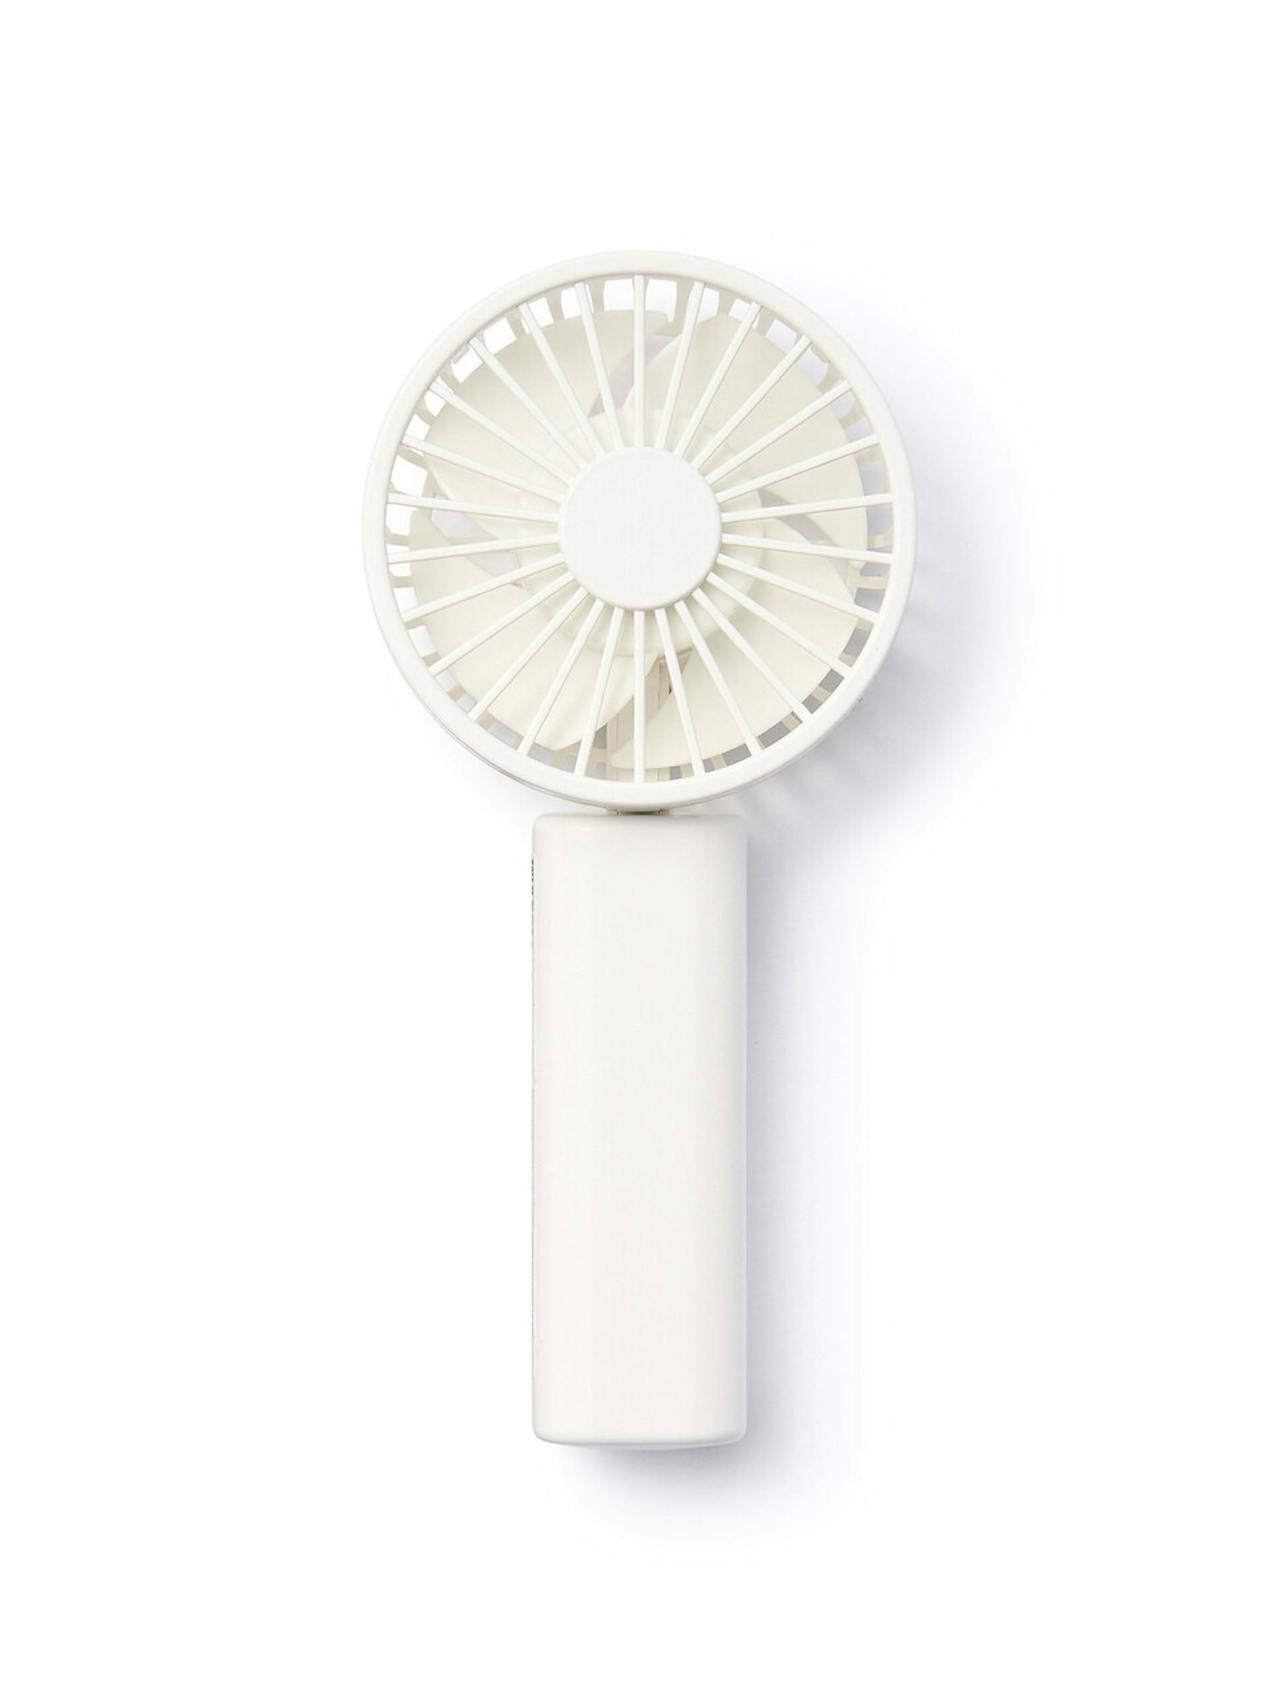 Rechargeable handheld fan